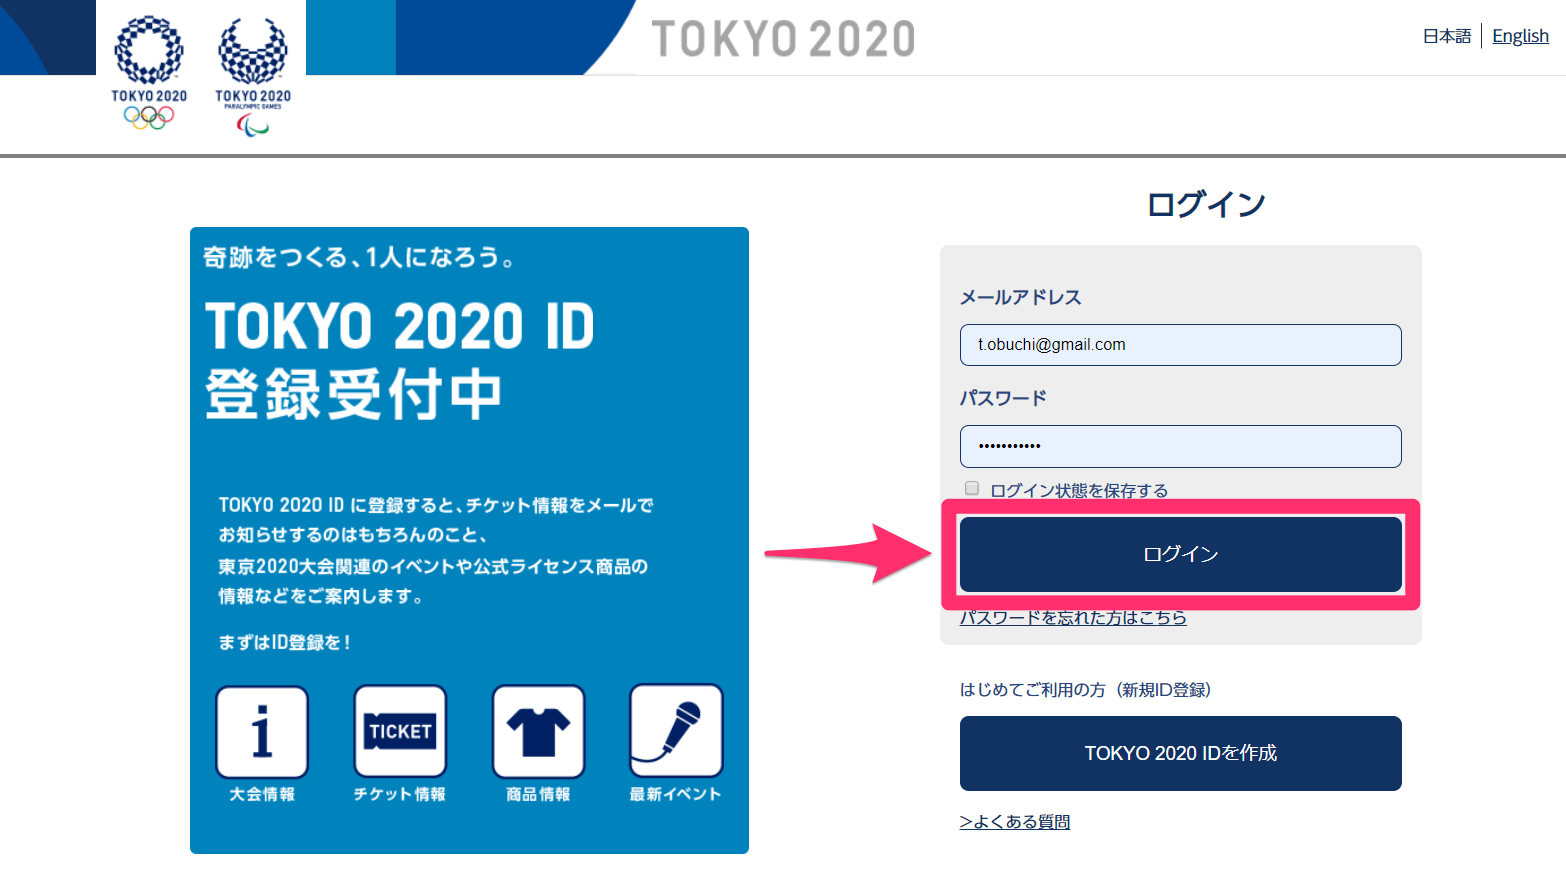 【東京オリンピック】観戦チケットの購入方法。競技や日程、席種の選択からカートへの保存まで